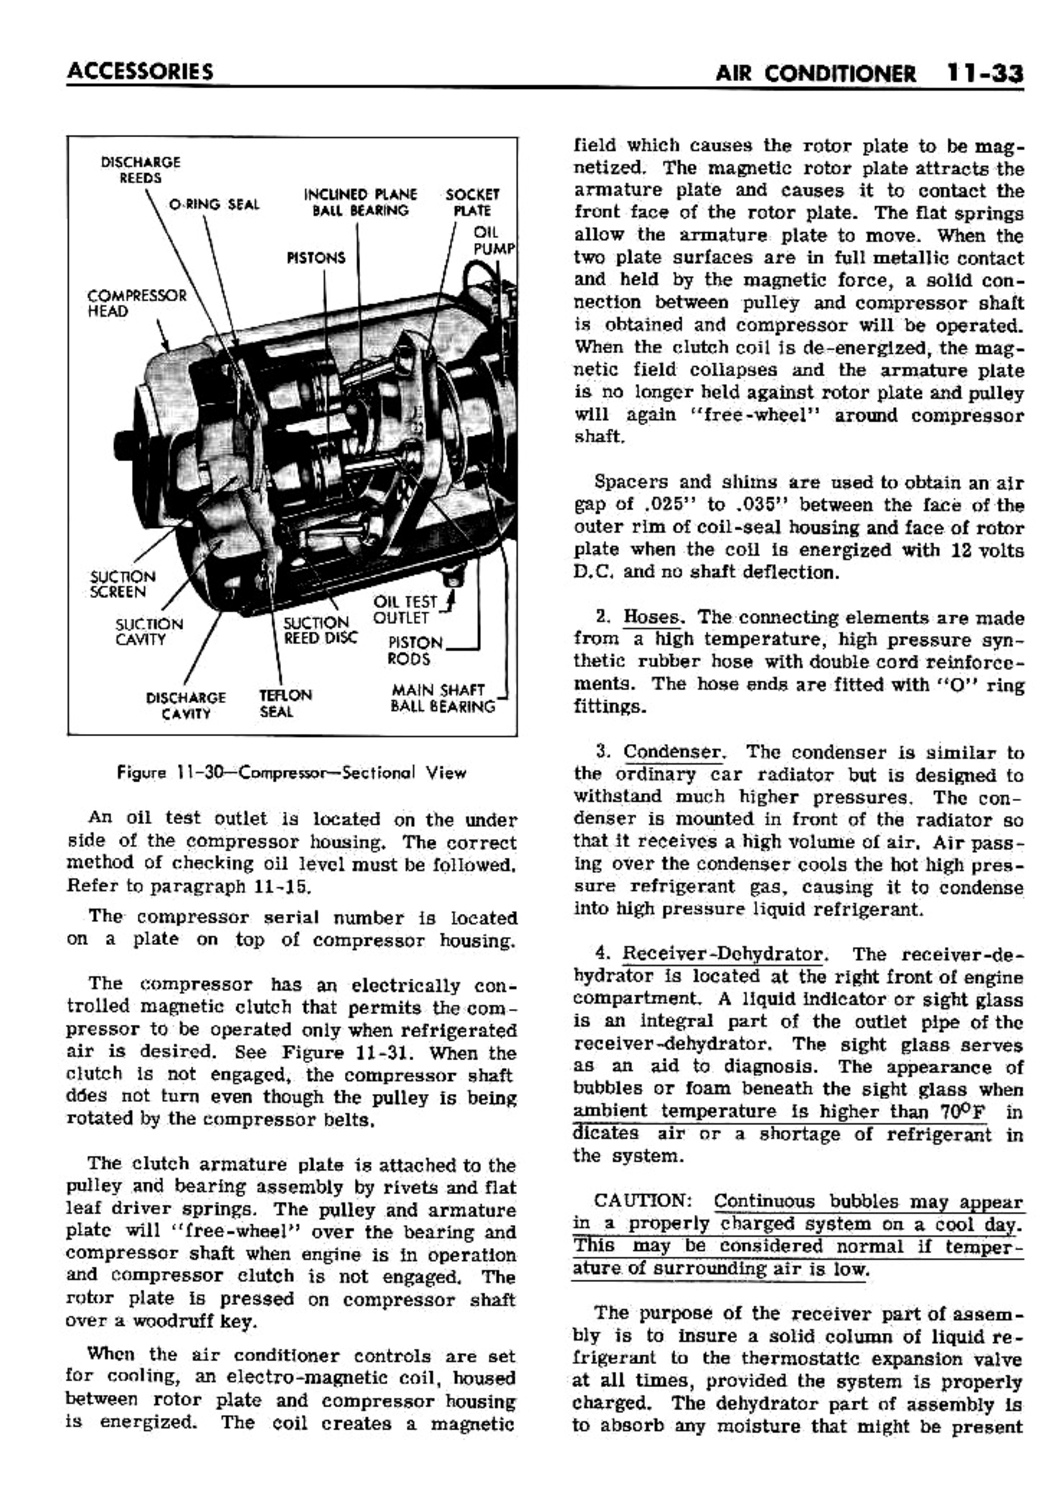 n_11 1961 Buick Shop Manual - Accessories-033-033.jpg